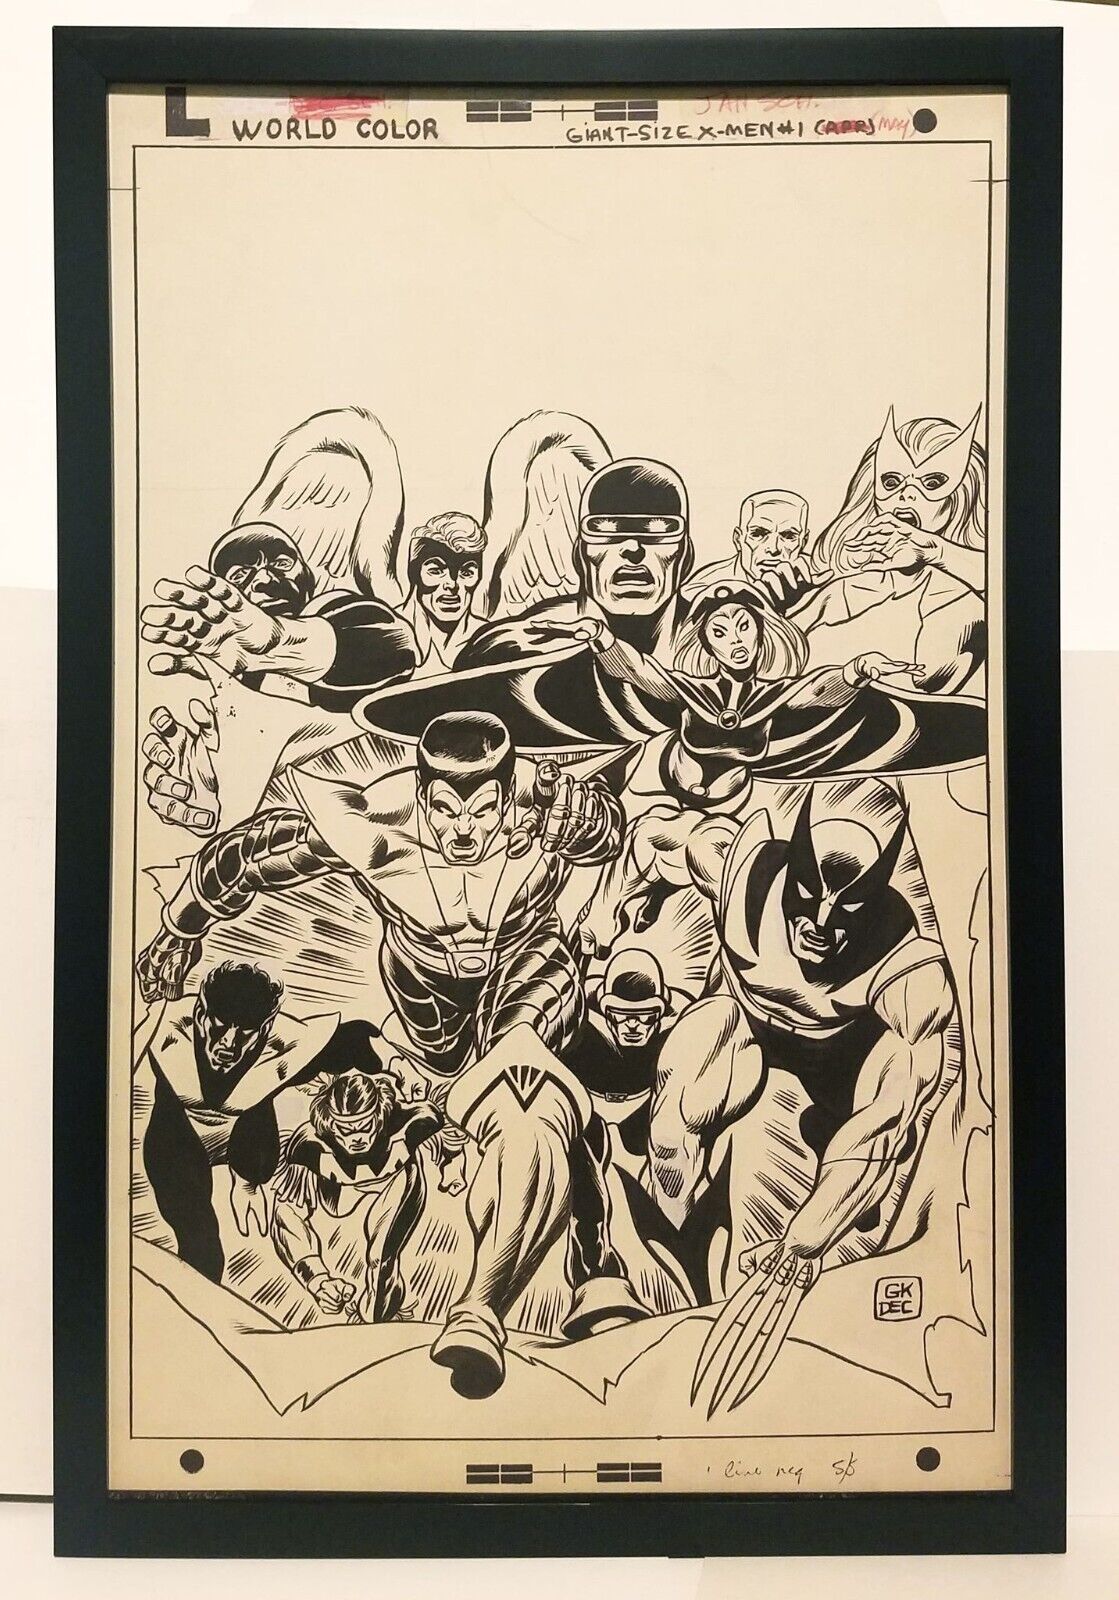 Giant Size X-Men #1 by Gil Kane 11x17 FRAMED Original Art Poster Marvel Comics